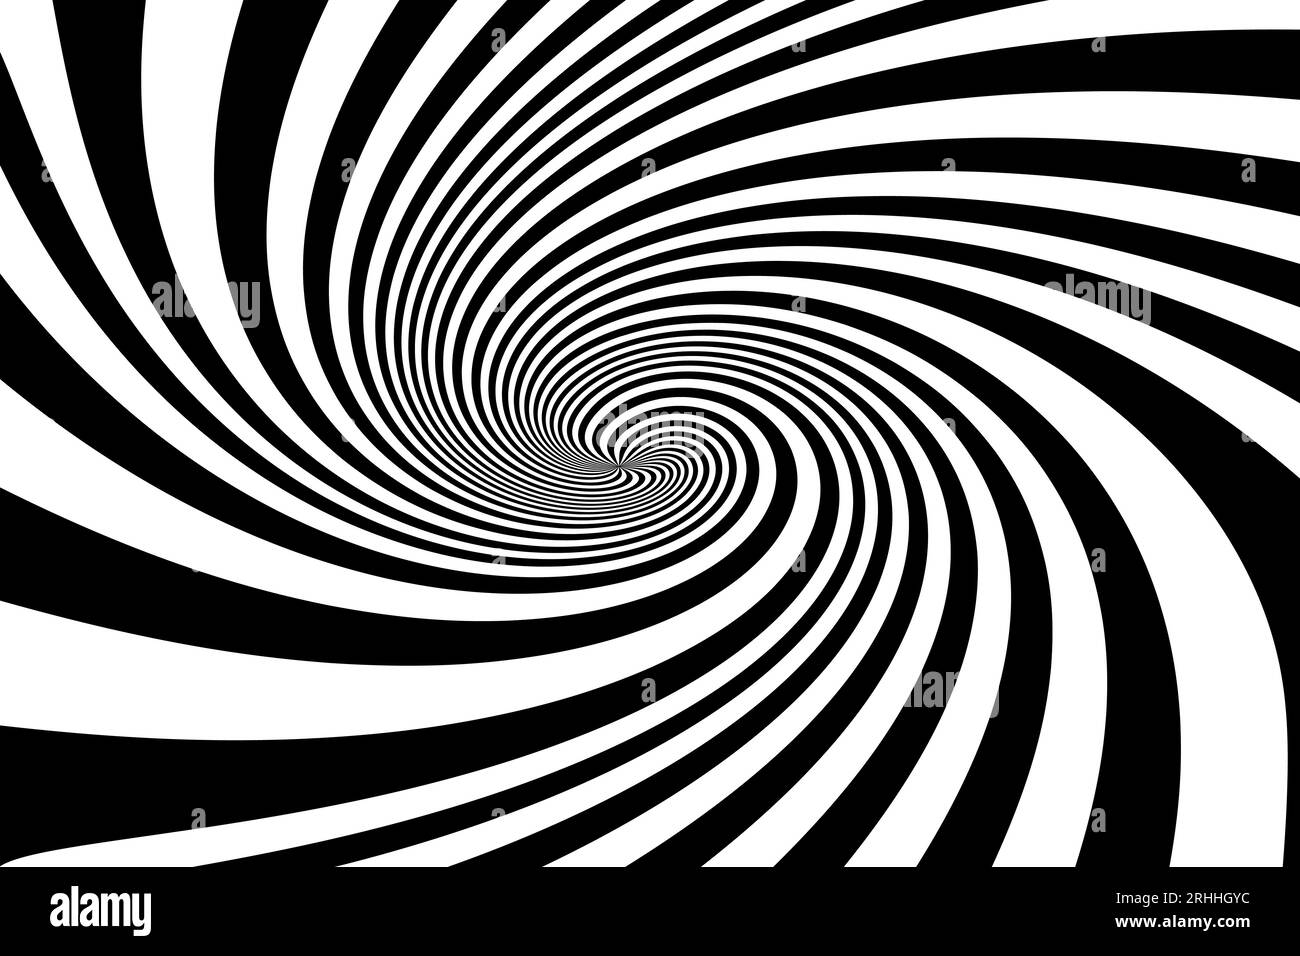 Wirbelnder spiralförmiger radialer Hintergrund. Vektorillustration Stock Vektor